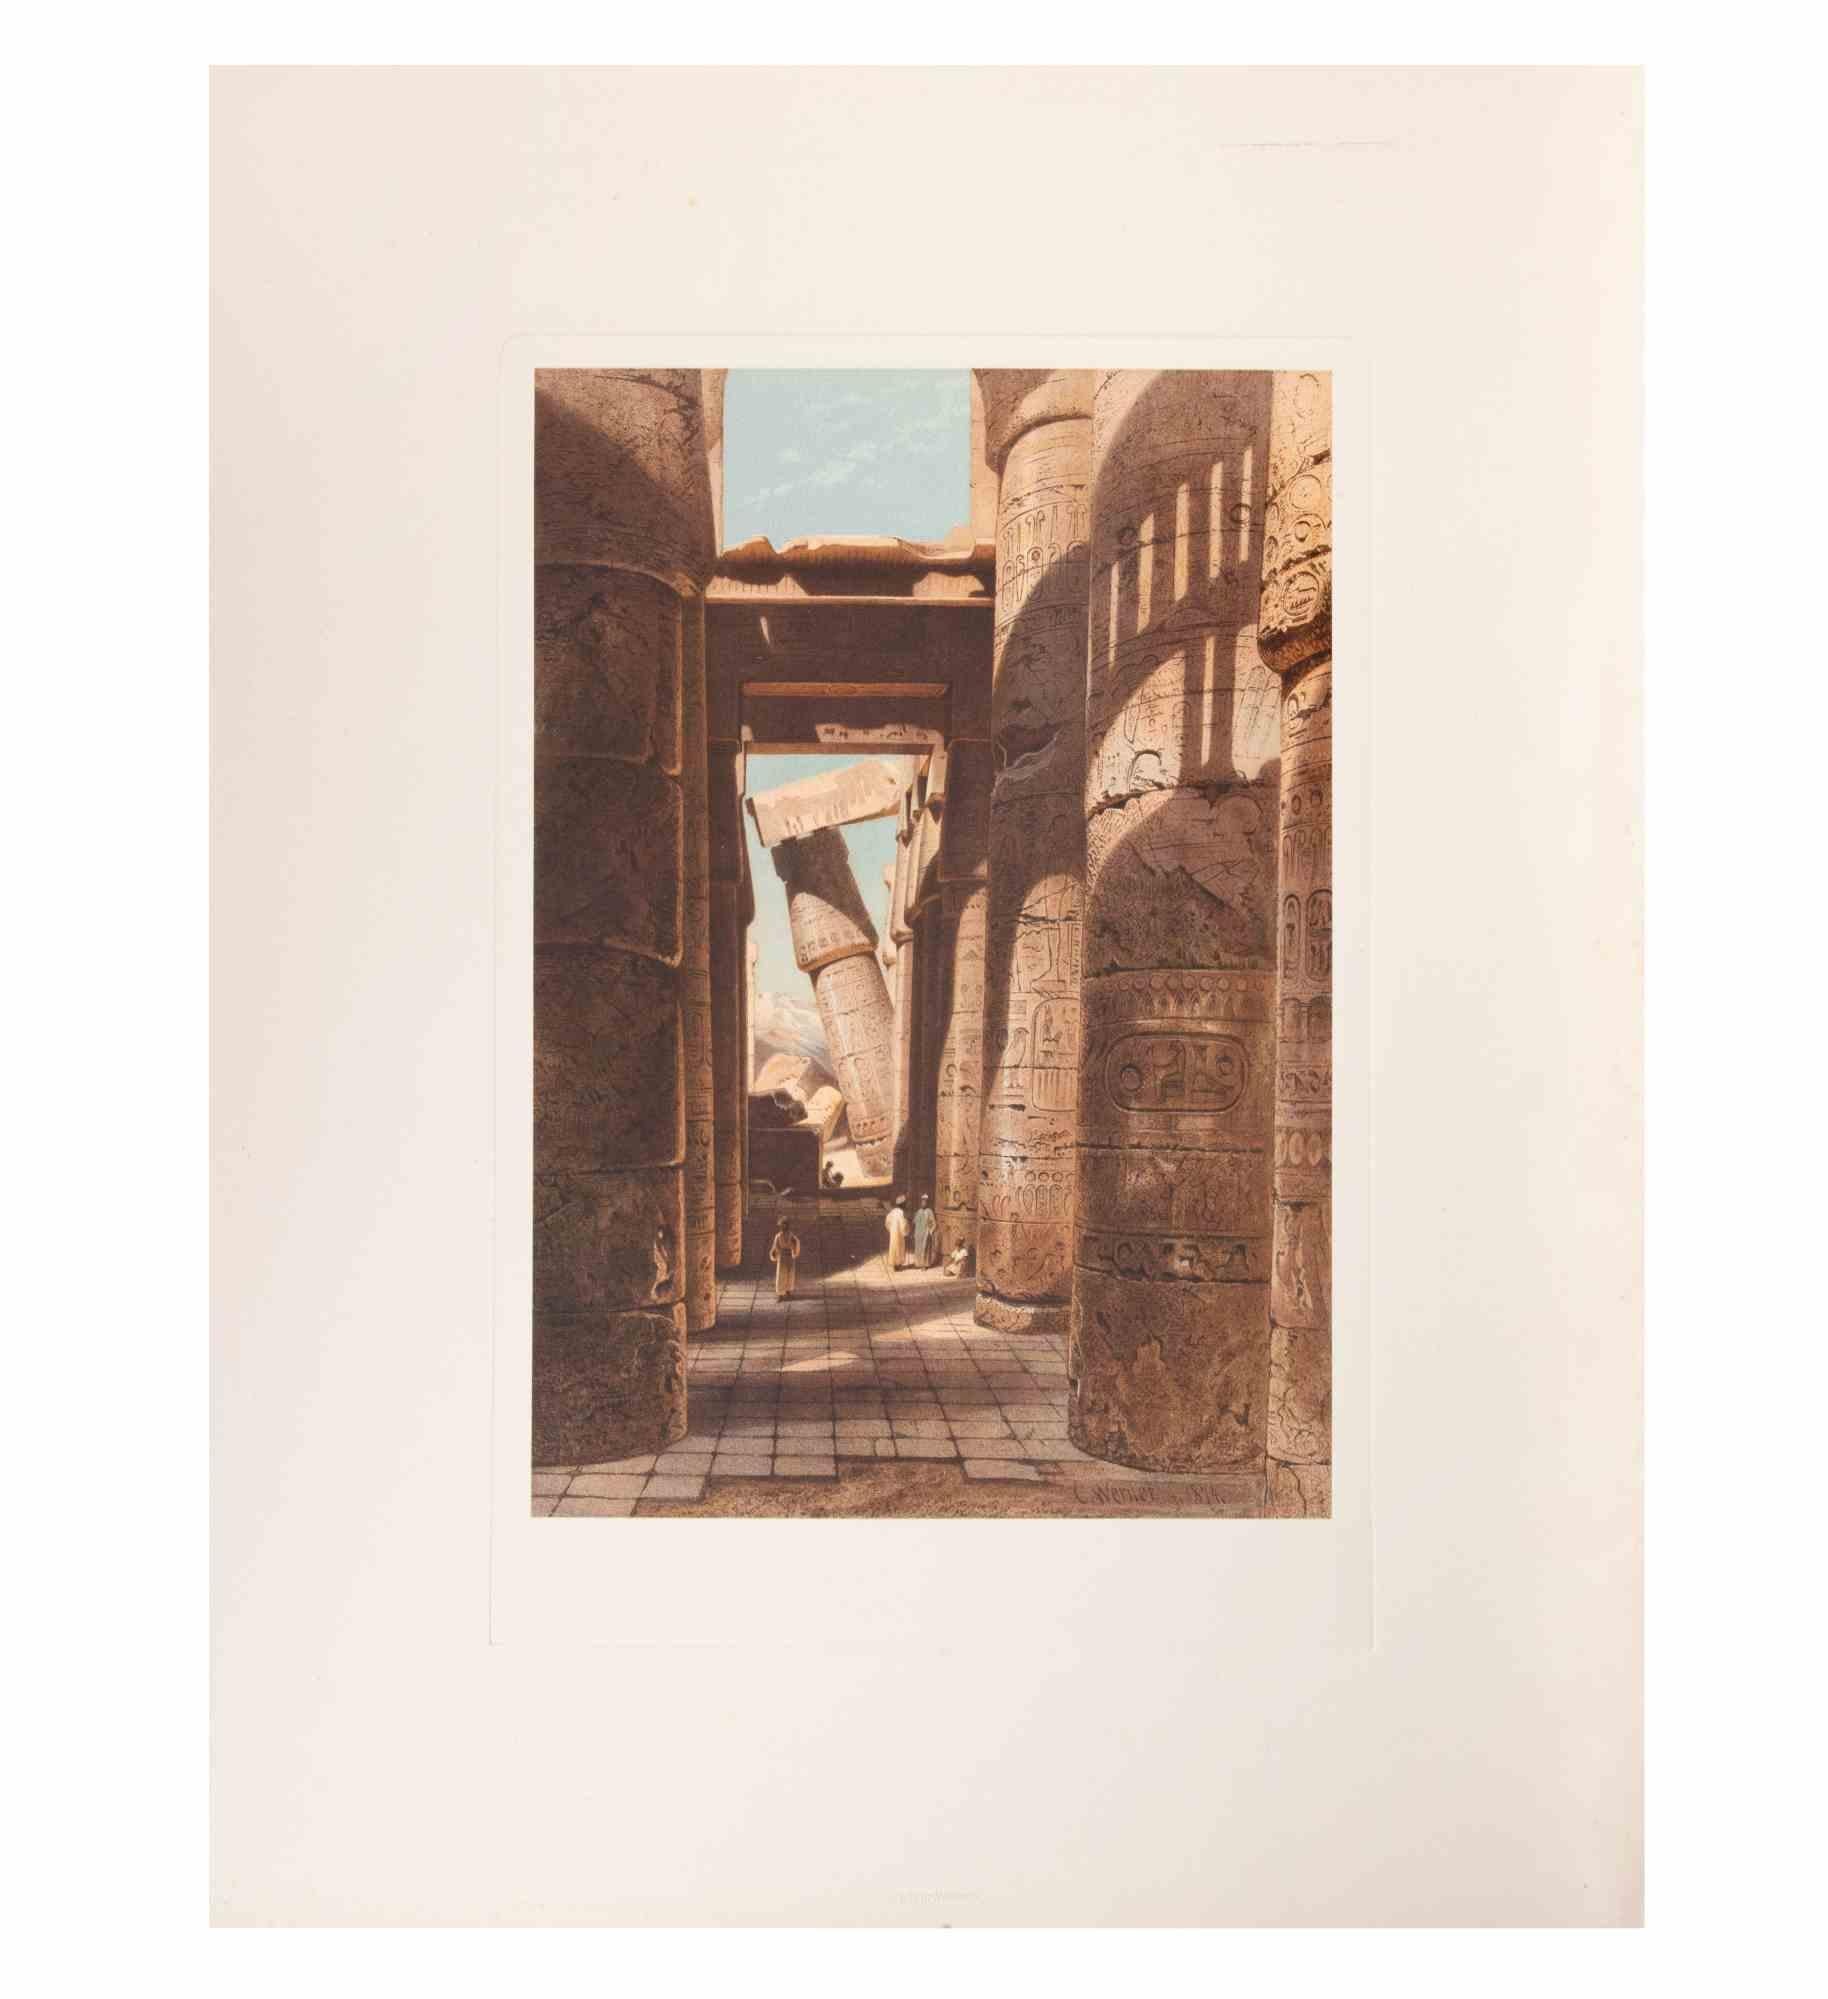 Egyptian Ruins ist ein modernes Kunstwerk, das d'apres Karl Werner realisiert wurde.

Gemischtfarbige Chromolithographie. 

Das Werk ist nach einem Aquarell gestaltet, das der Künstler während einer Reise nach Ägypten zwischen 1862 und 1865